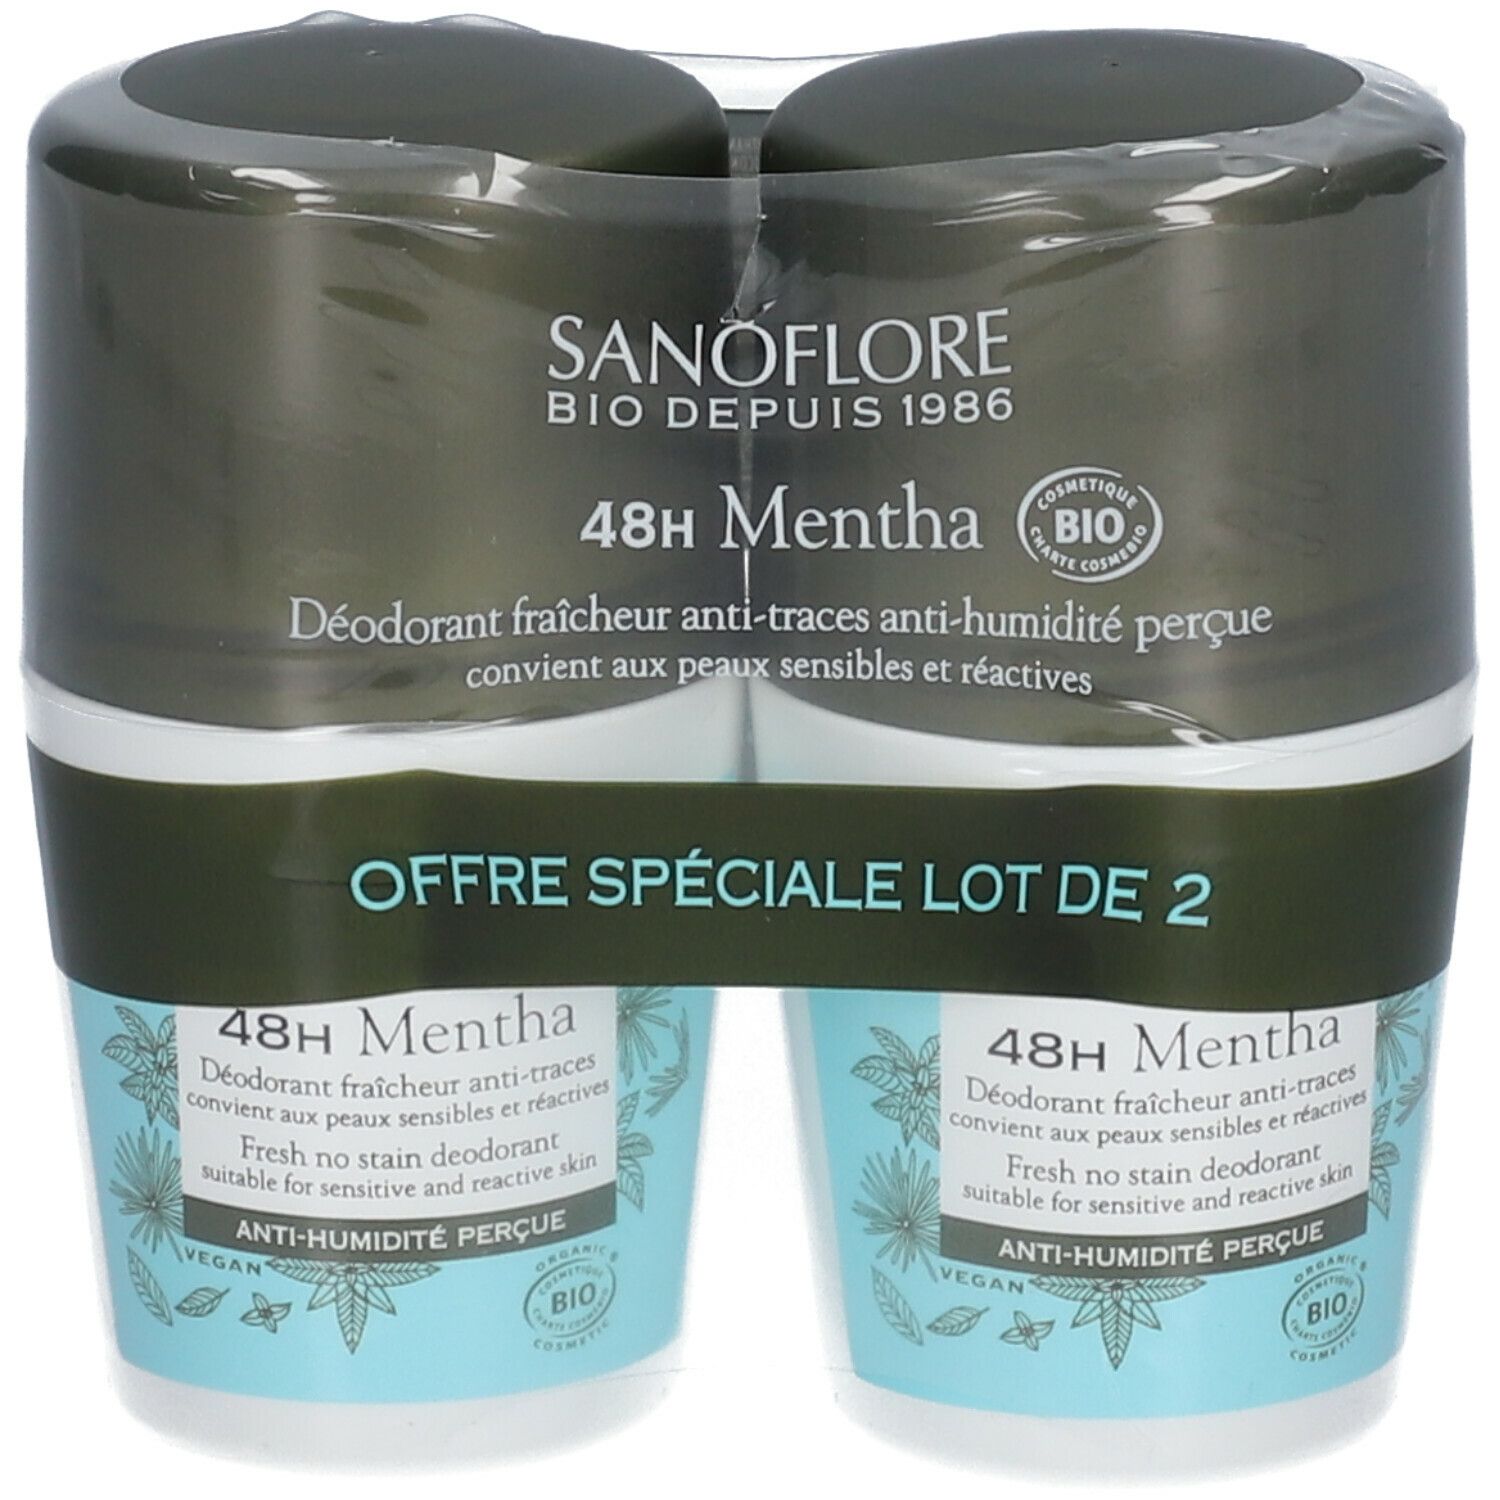 Sanoflore Déodorant Mentha efficacité 48h certifié bio